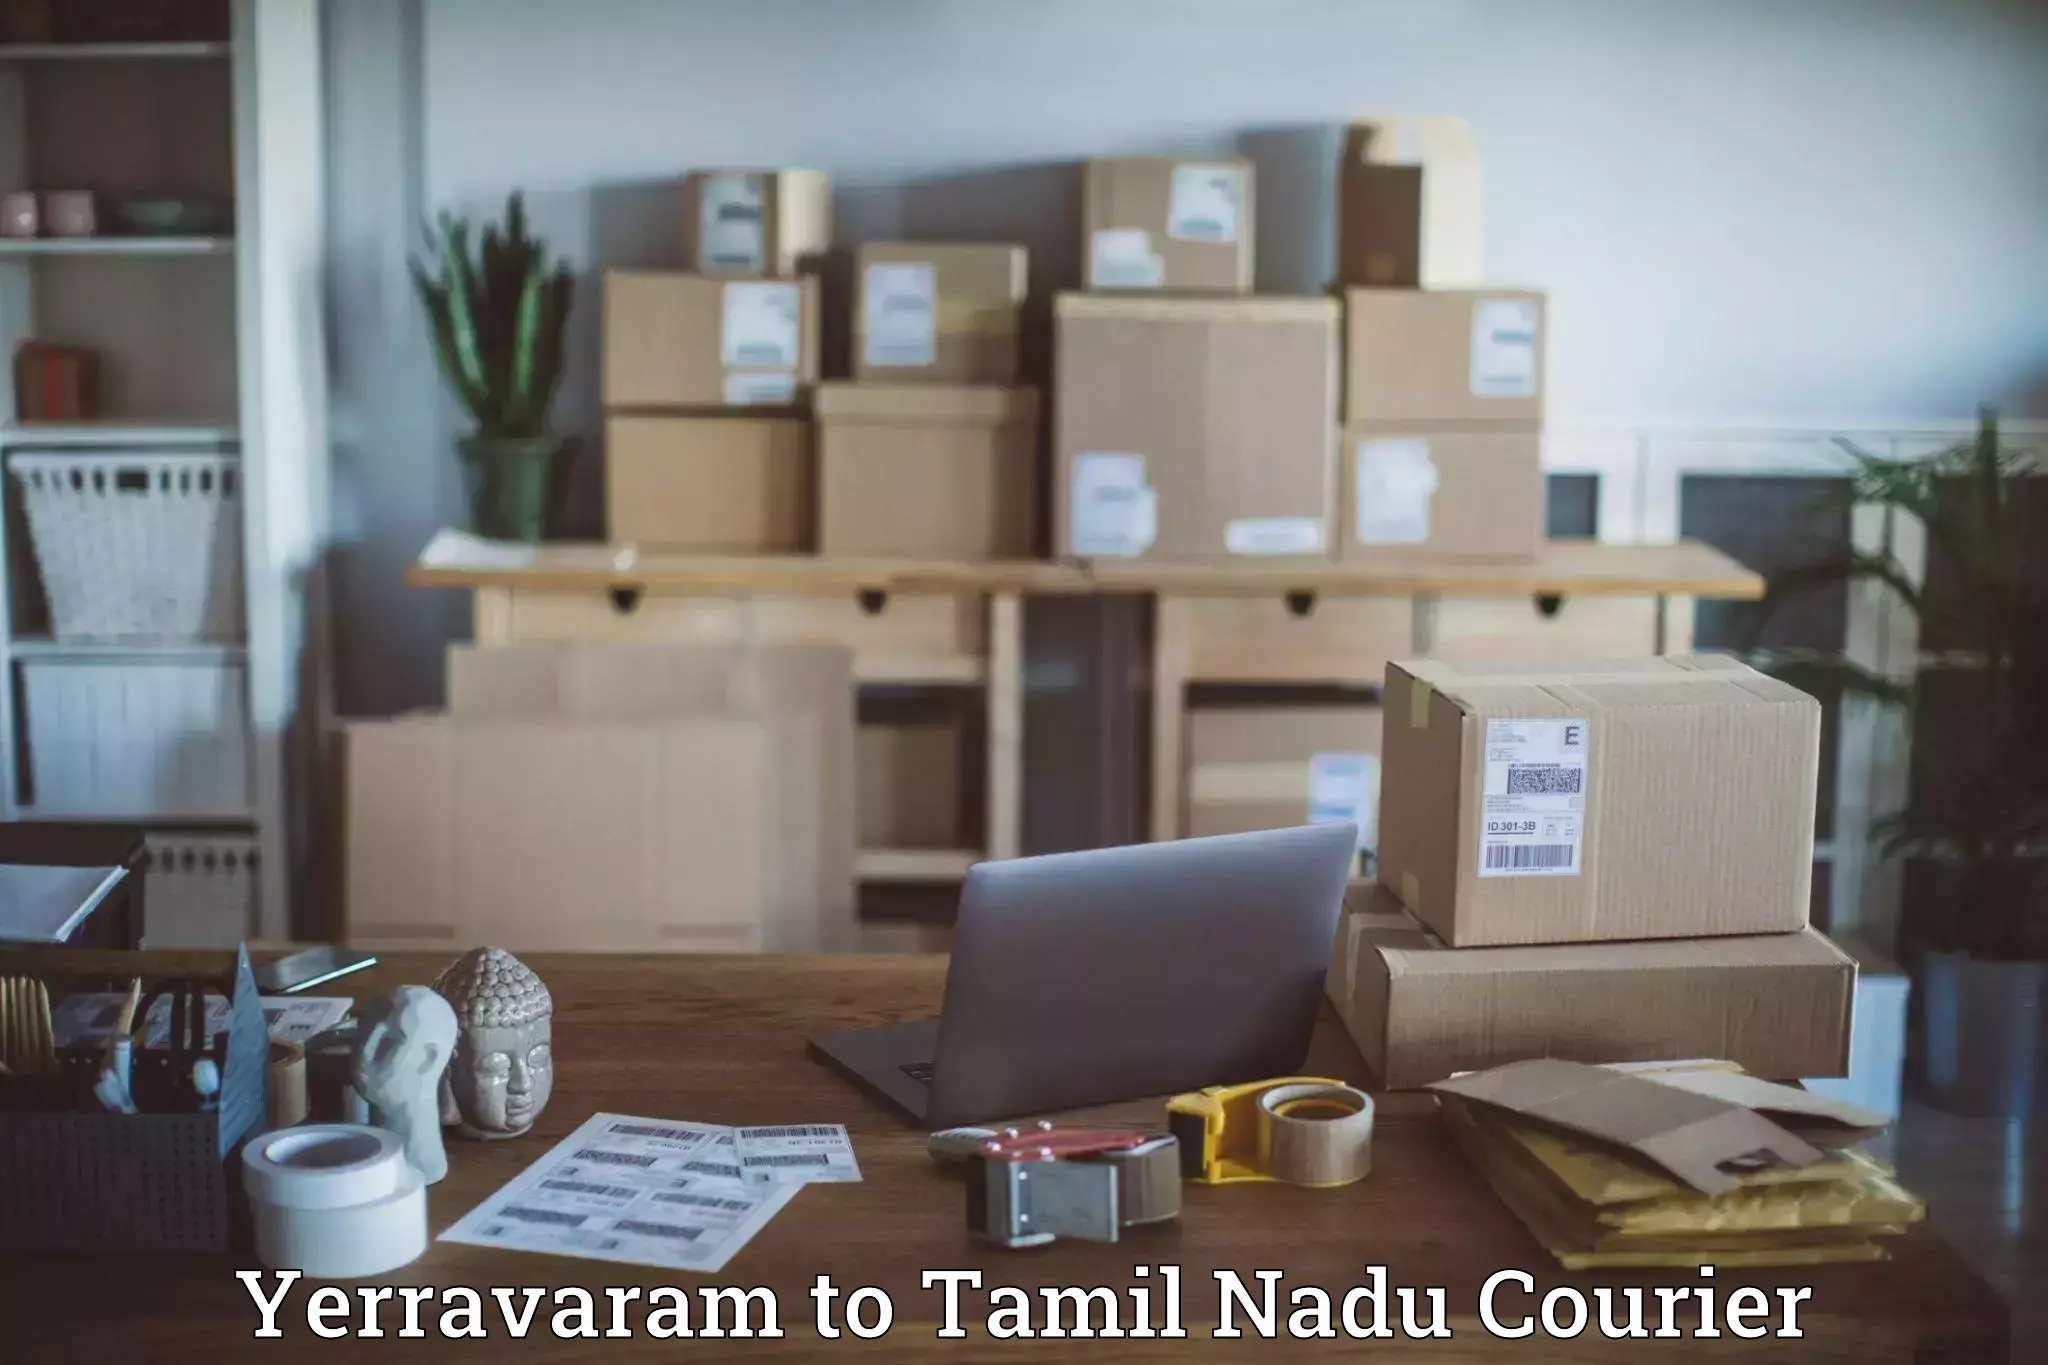 Courier service comparison in Yerravaram to Tamil Nadu